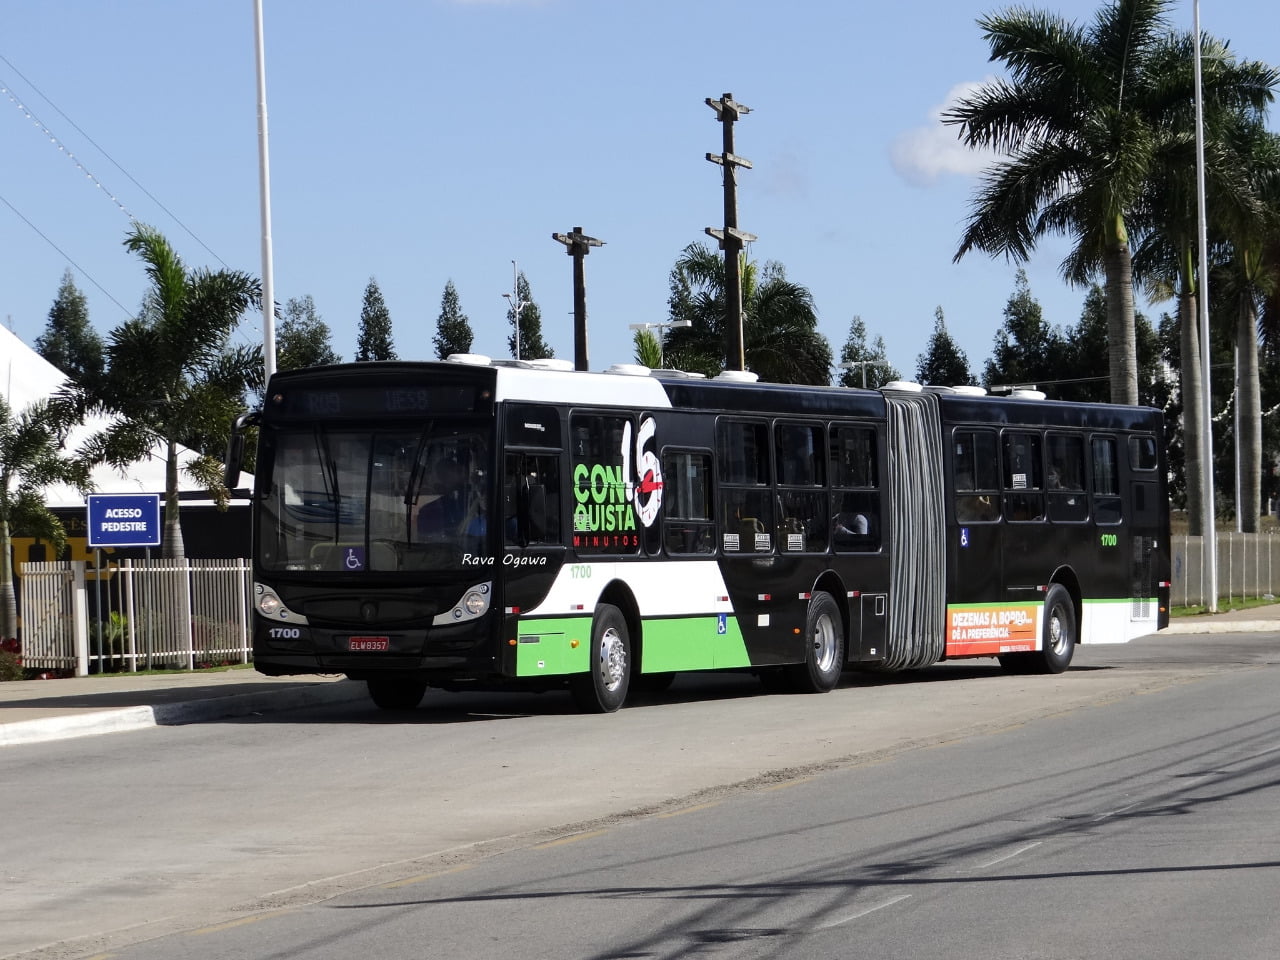 Horários de cinco de linhas de ônibus de Vitória da Conquista passam por  alterações